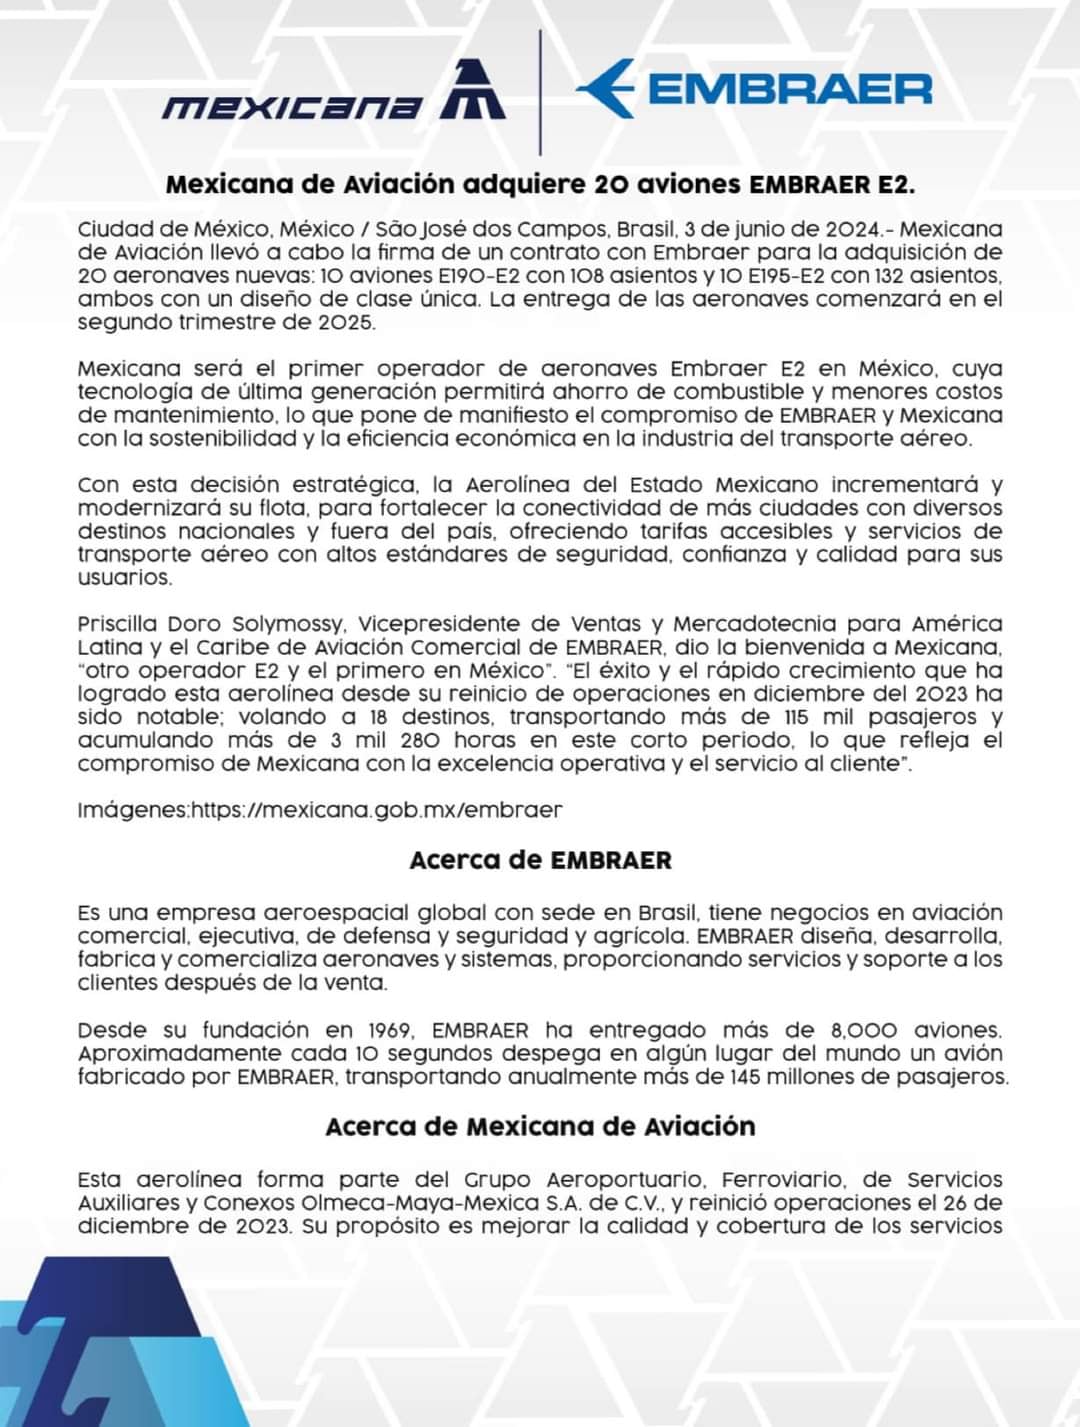 Acuerdo entre Mexicana de Aviación y la fabricante de aviones brasileña Embraer